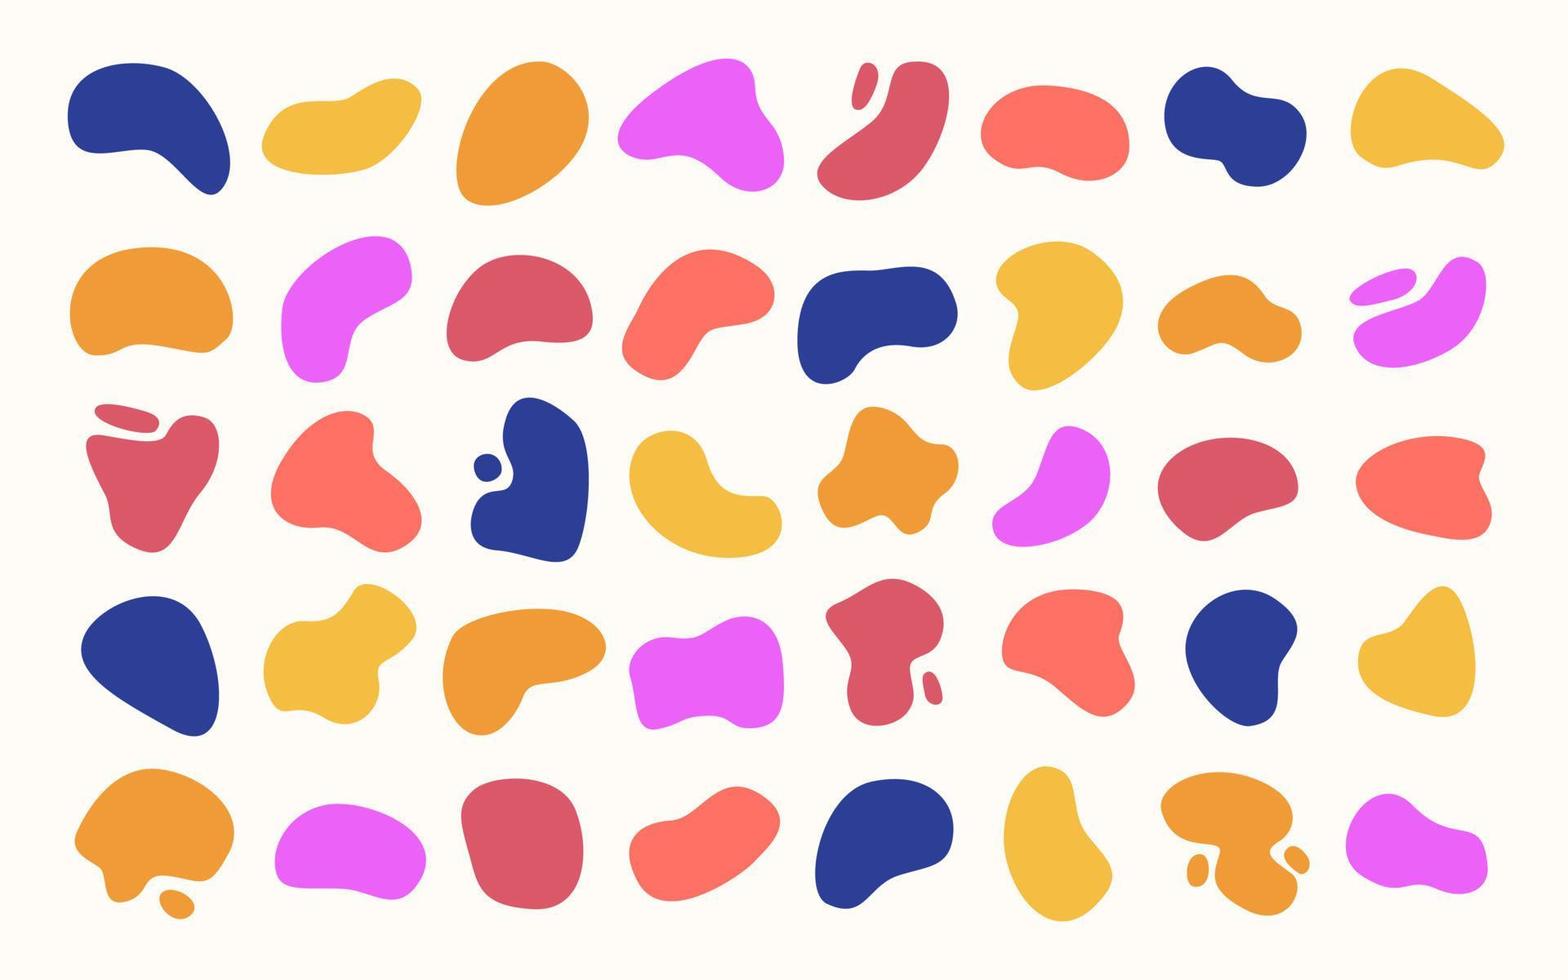 abstrakte mehrfarbige blobs formen sammlung. moderne fleckendesignelemente in lebendigen farben, editierbarer eps-vektor. abstrakte flüssige formen. vektor